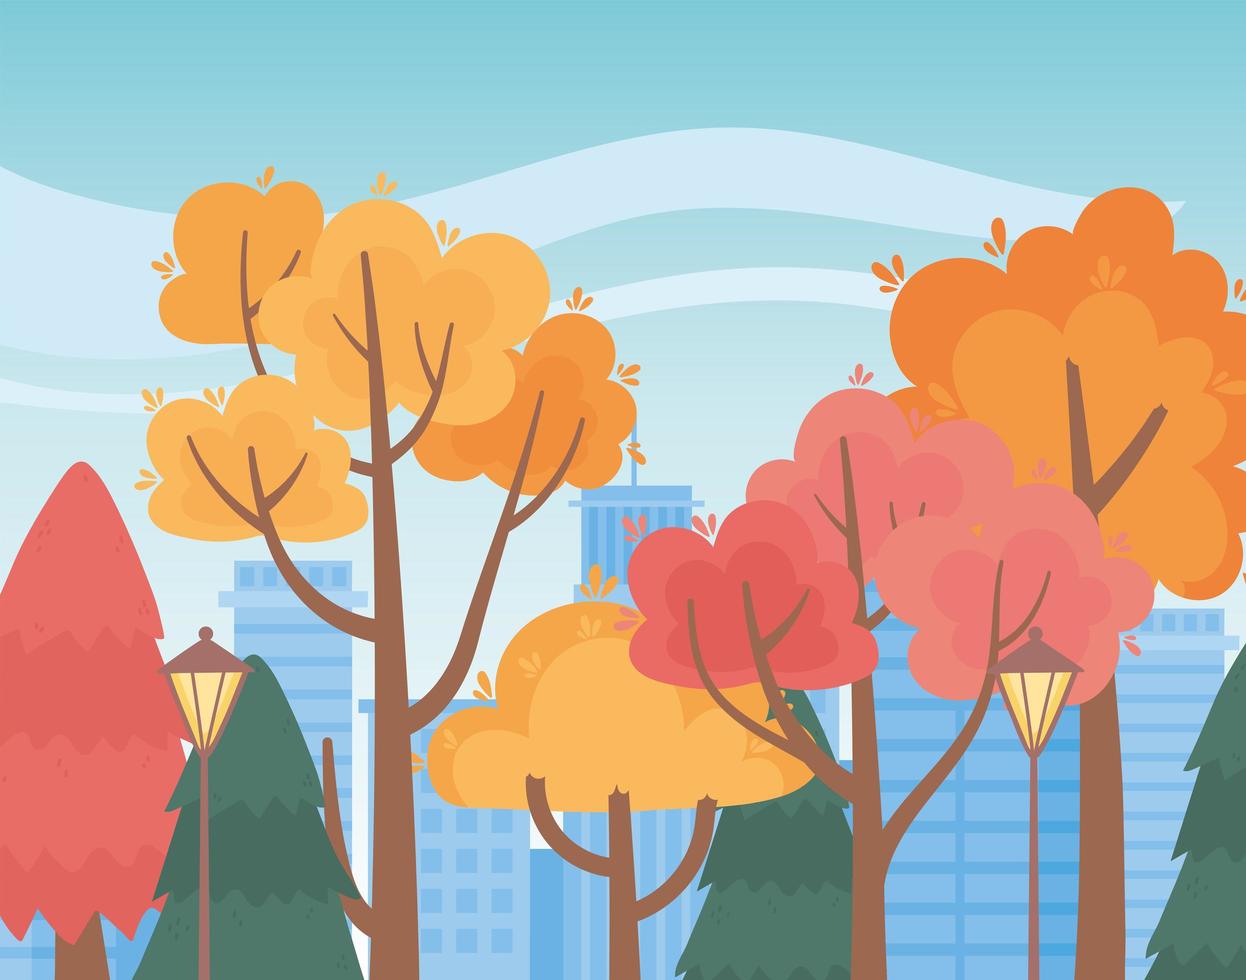 paisagem no outono. árvores do parque, lâmpadas e paisagem urbana vetor